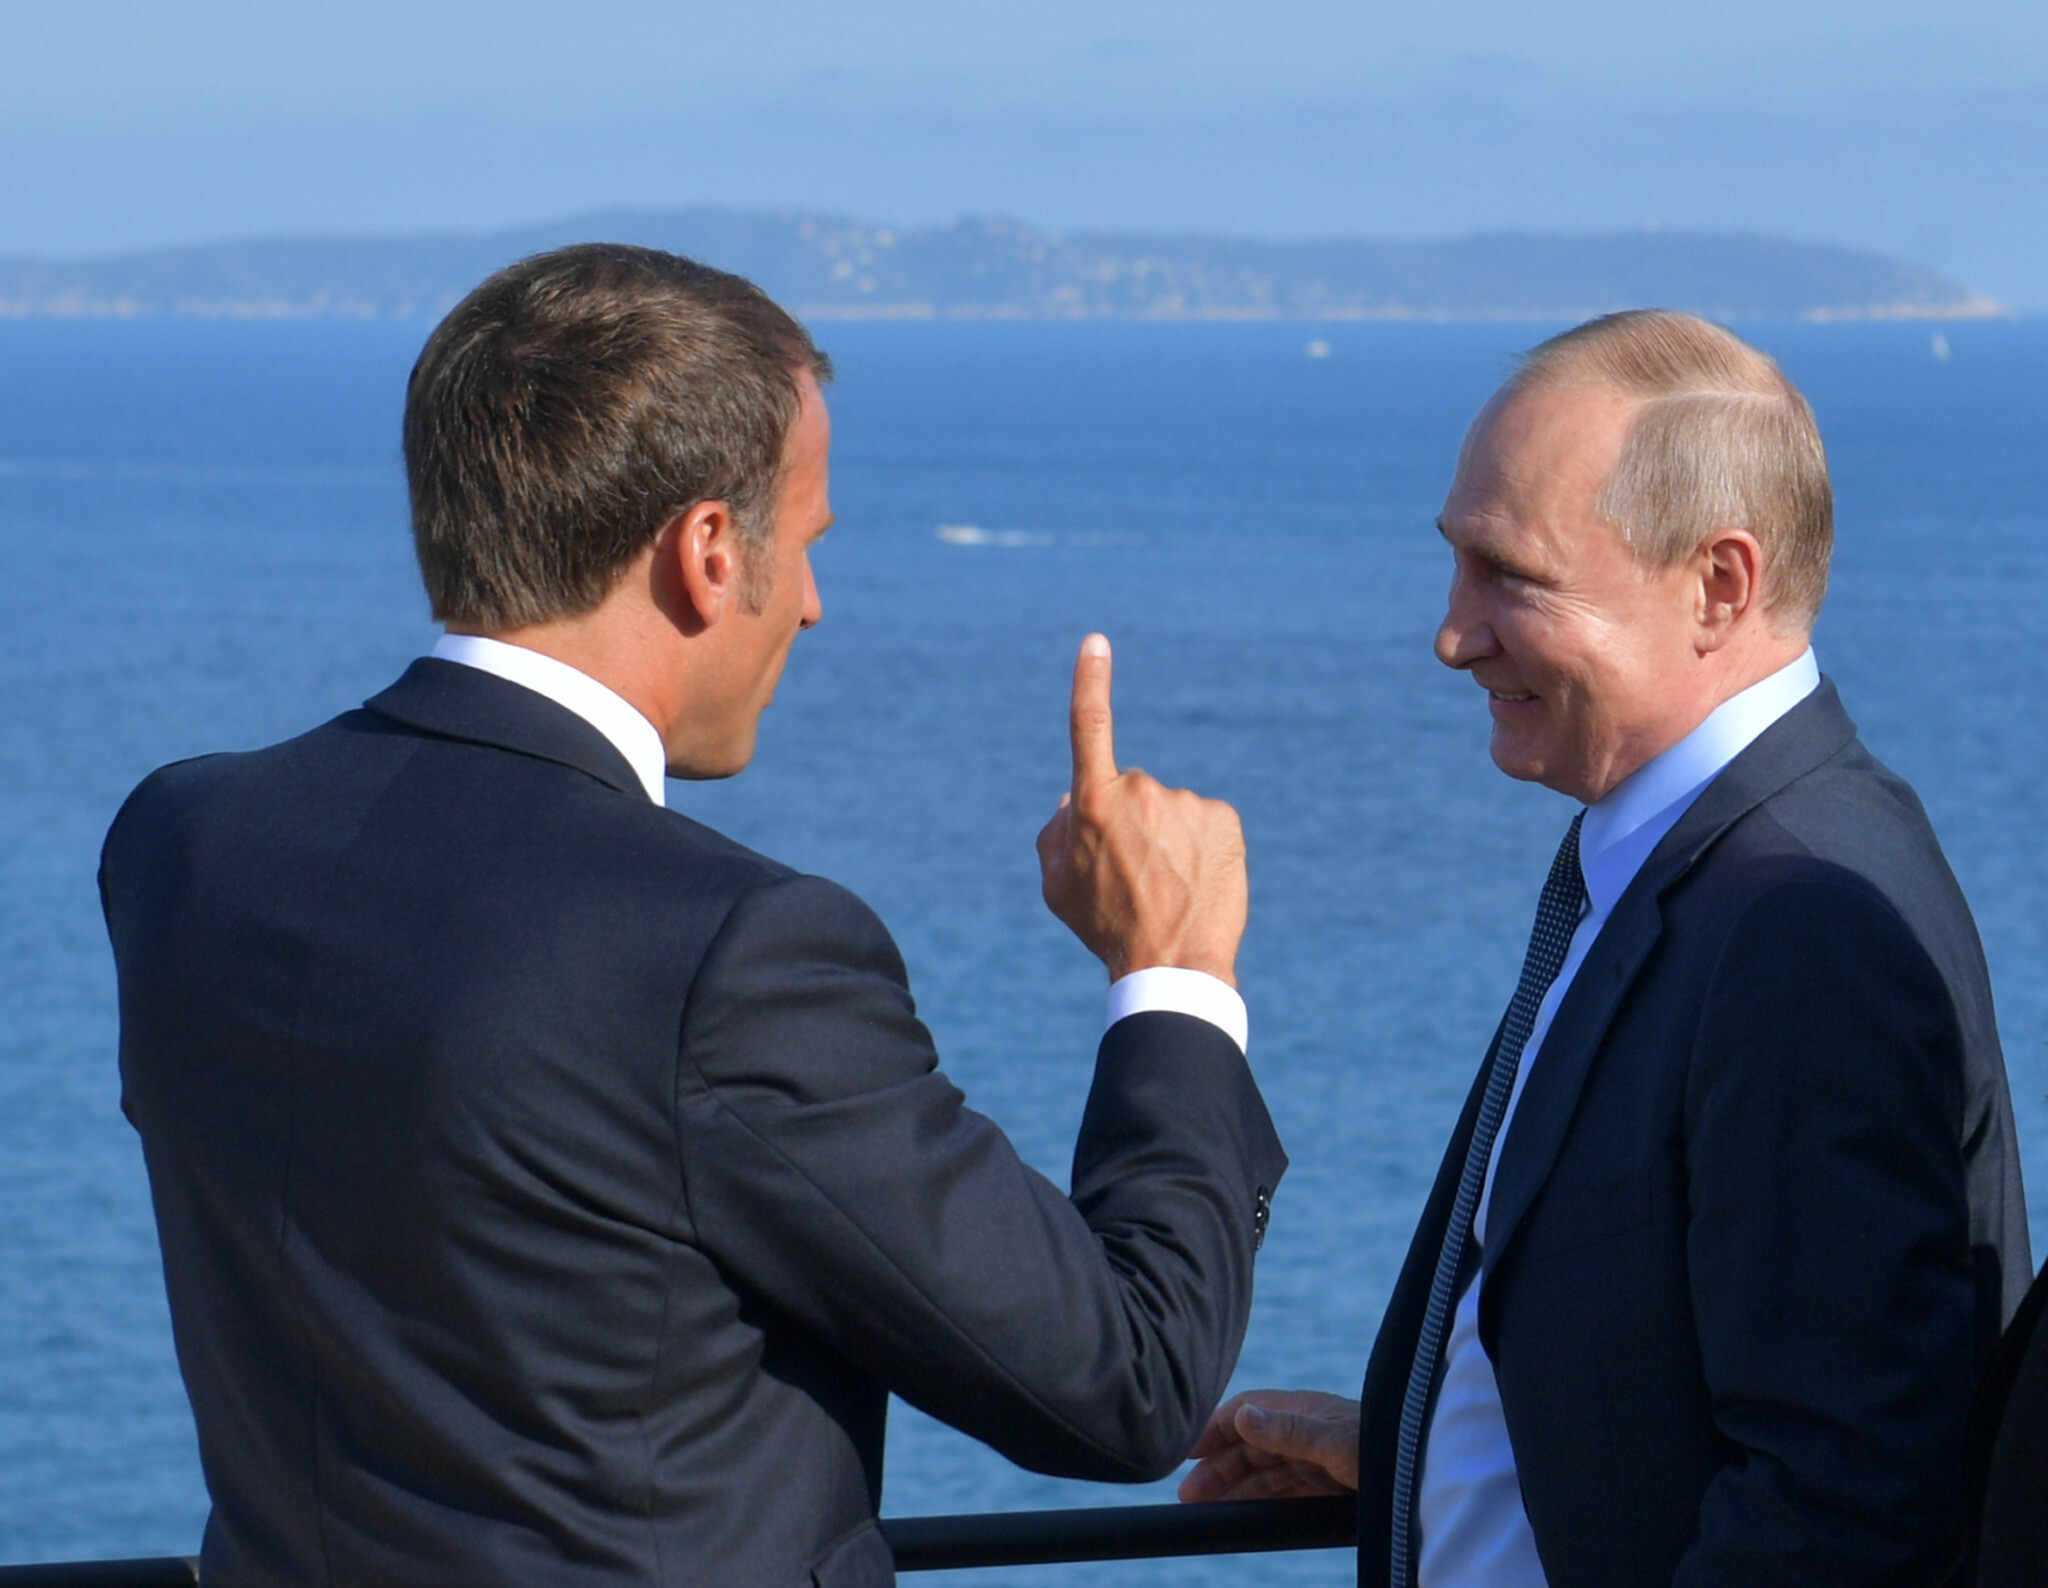 Fransa Ukraynaya qarşı Rusiya ilə gizli sövdələşməyə gedib? - TƏHLİL